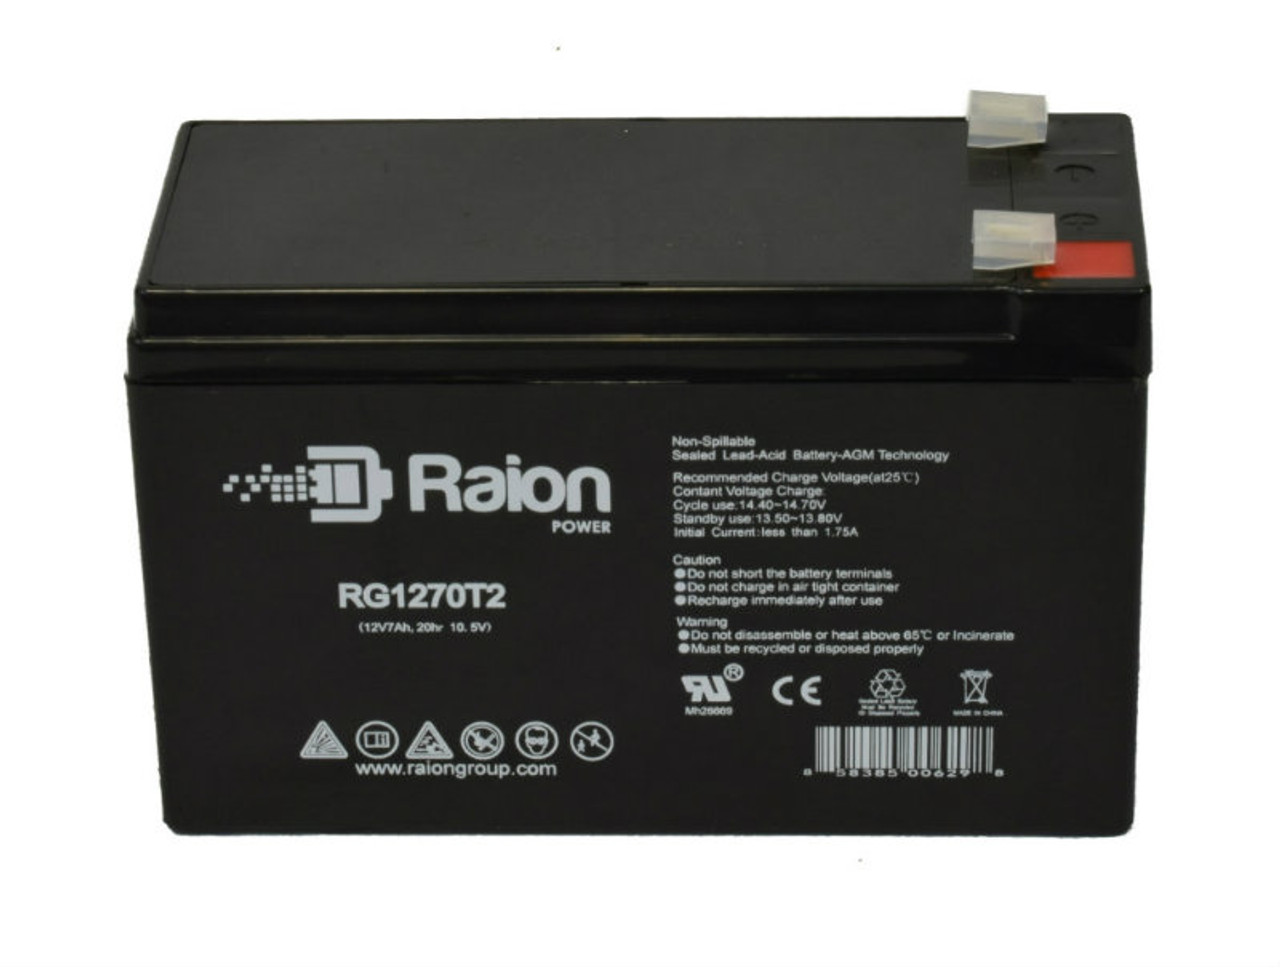 Raion Power RG1270T1 12V 7Ah Lead Acid Battery for Bruno Elite Straight Stairlift SRE 2010